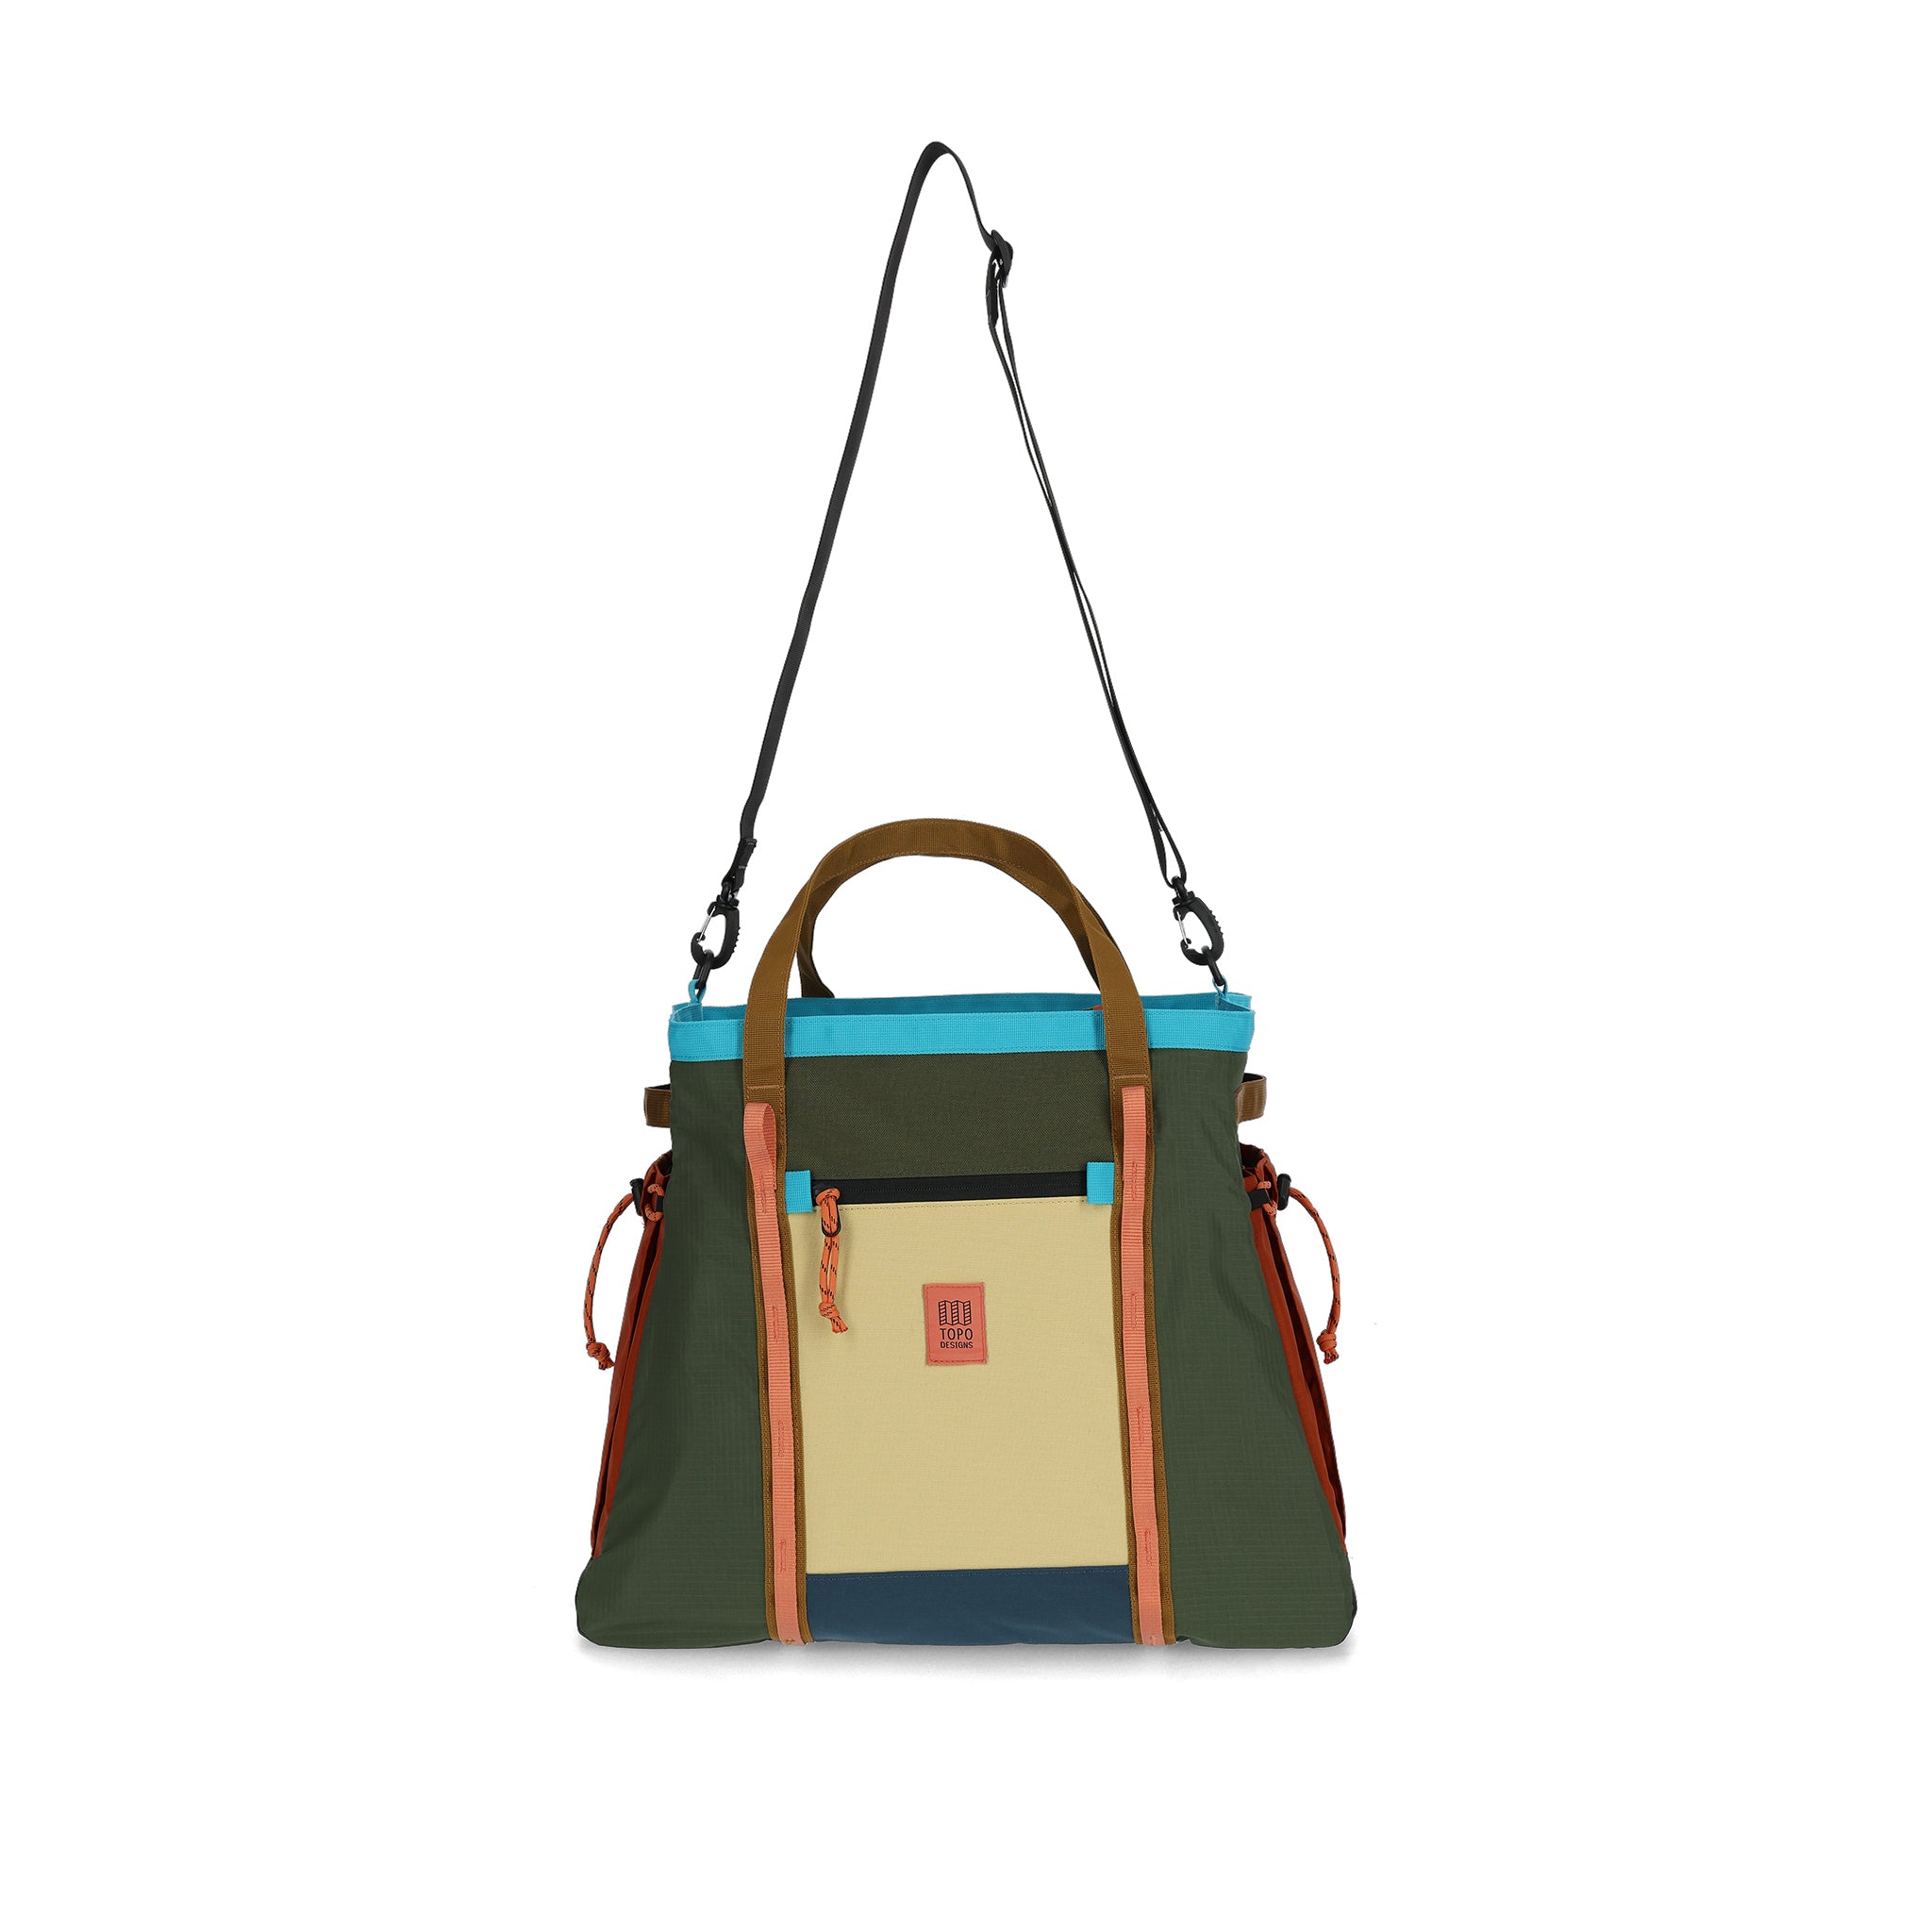 Mountain Gear Bag | Topo Designs